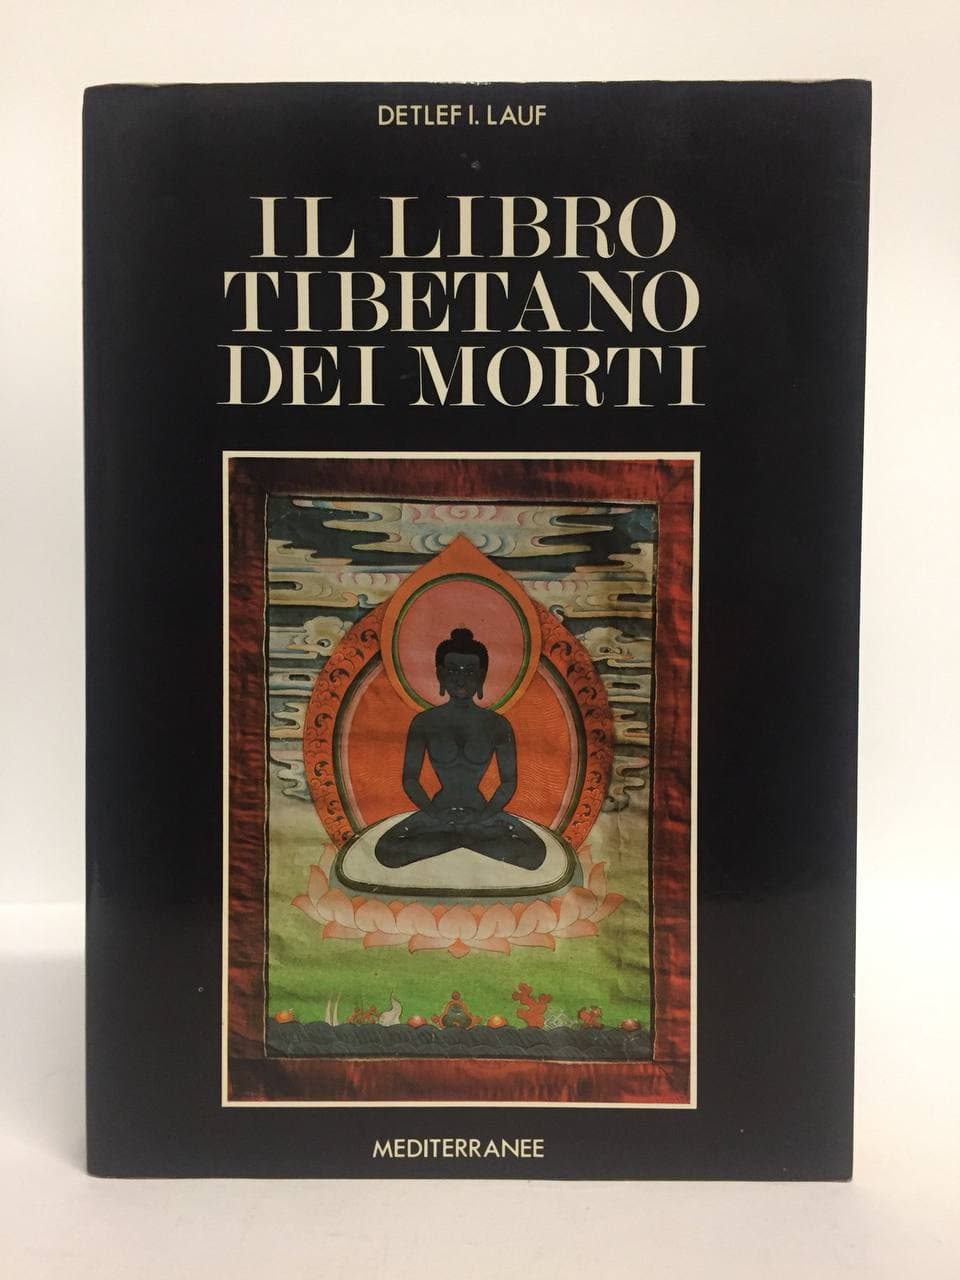 Il libro tibetano dei morti. Lauf Detlef. Mediterranee, 1992. - Equilibri  Libreria Torino